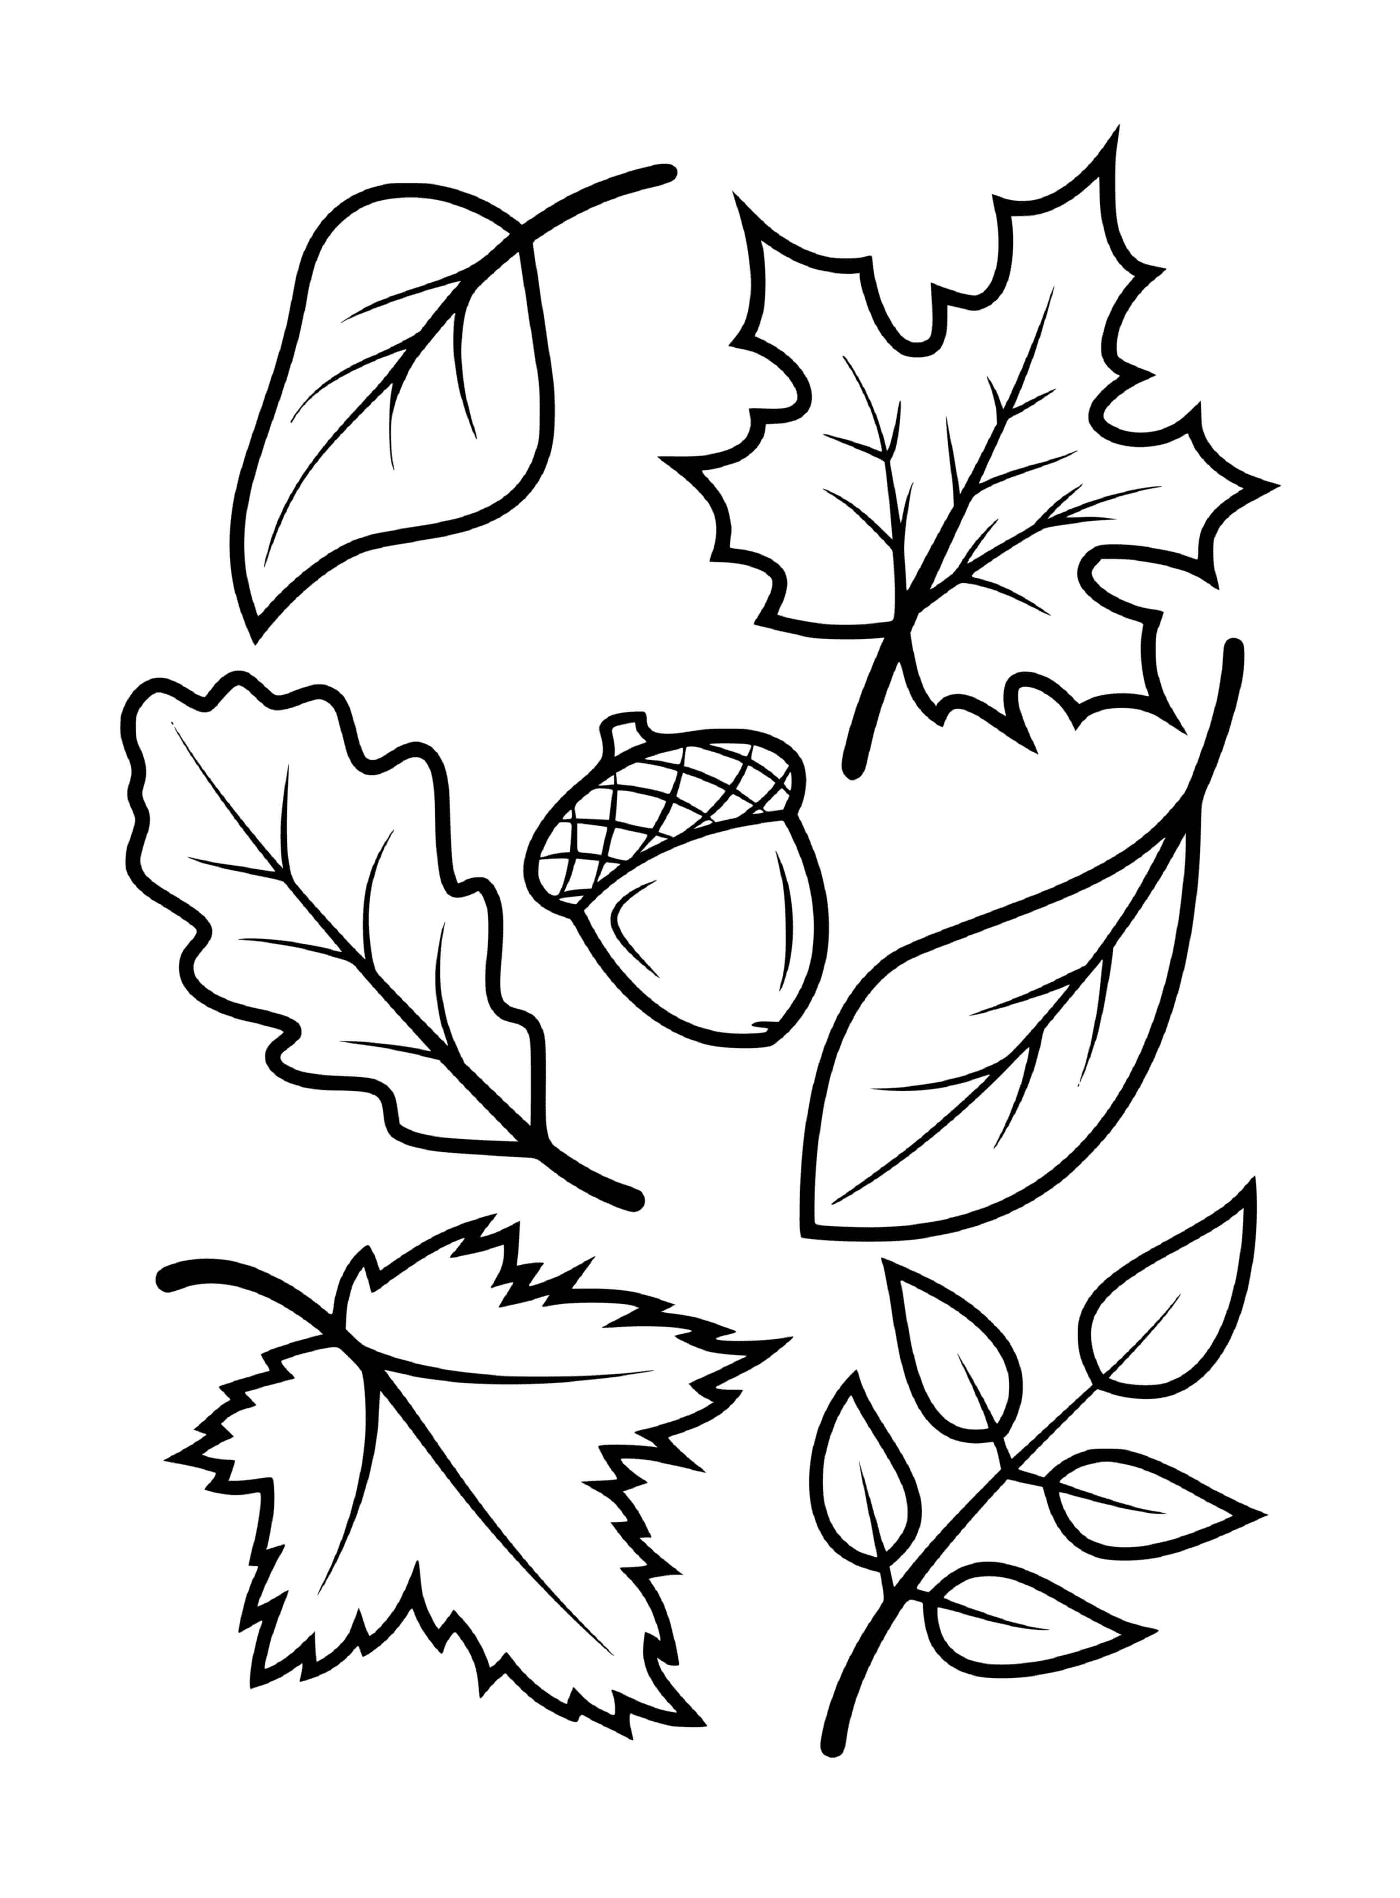  Blätter und Eicheln von Herbstbäumen (z.B. Ahorn, Buche, Eiche) 